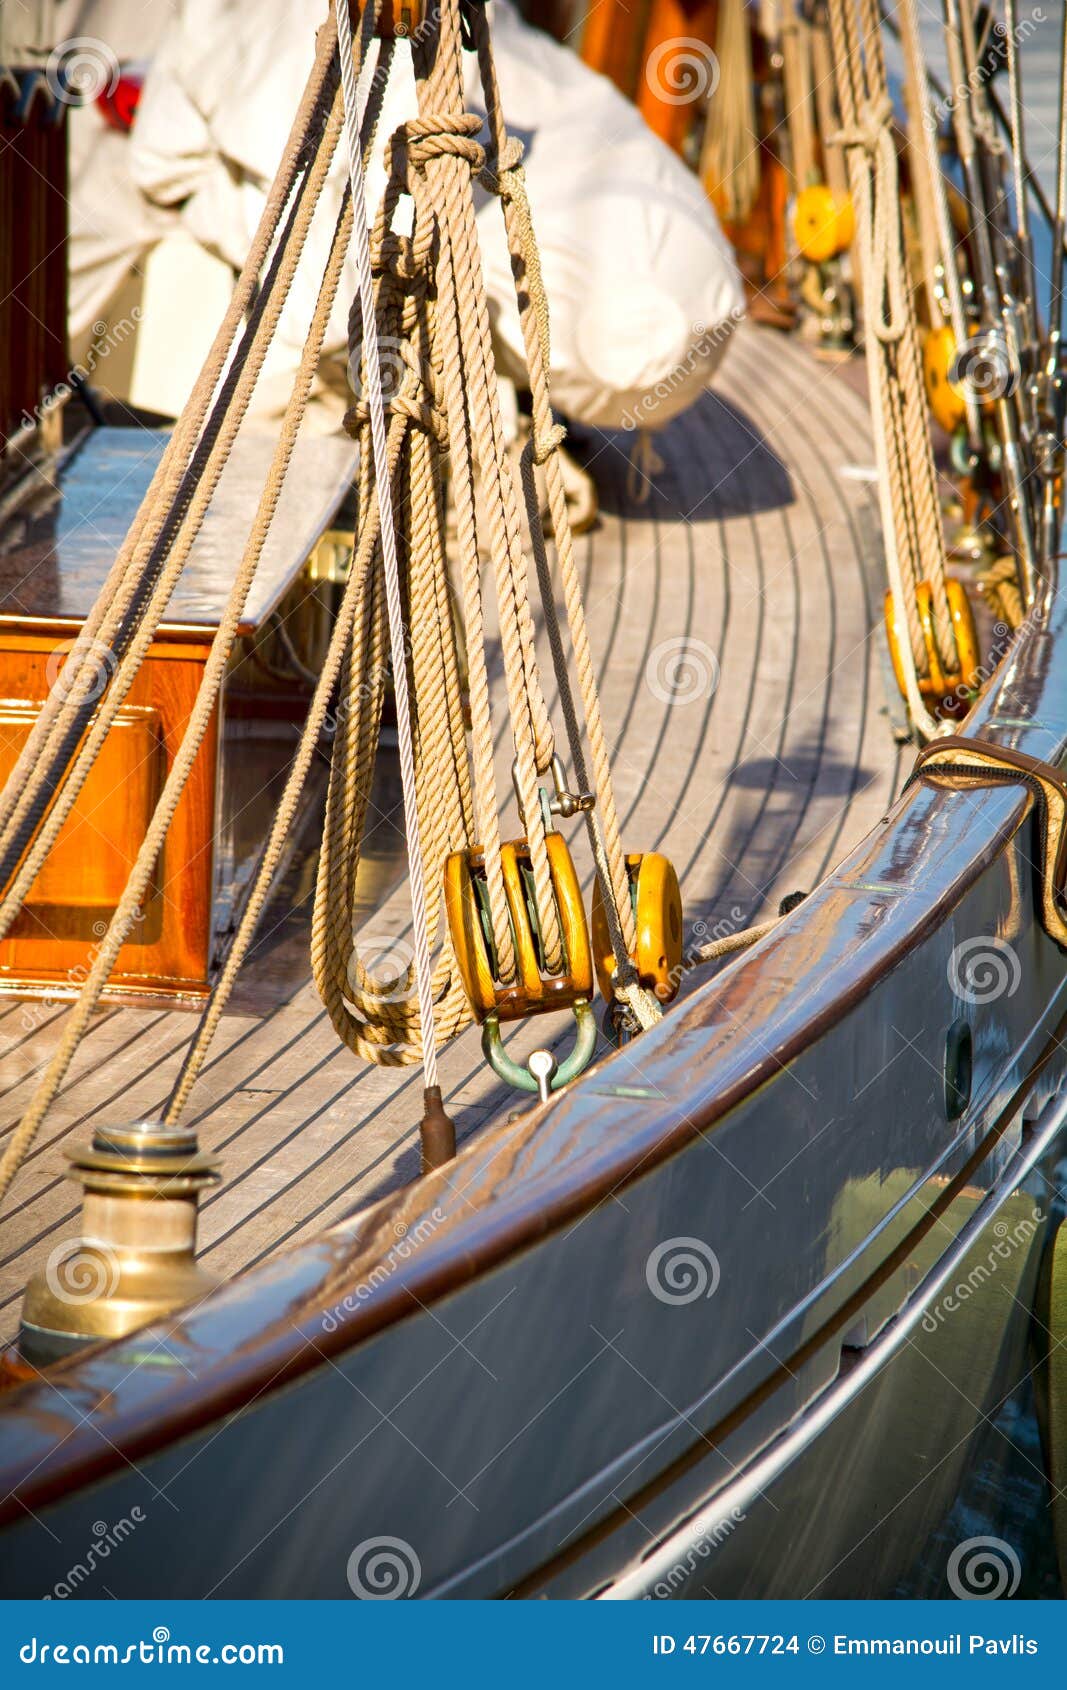 sailing yachts' pulleys and ropes